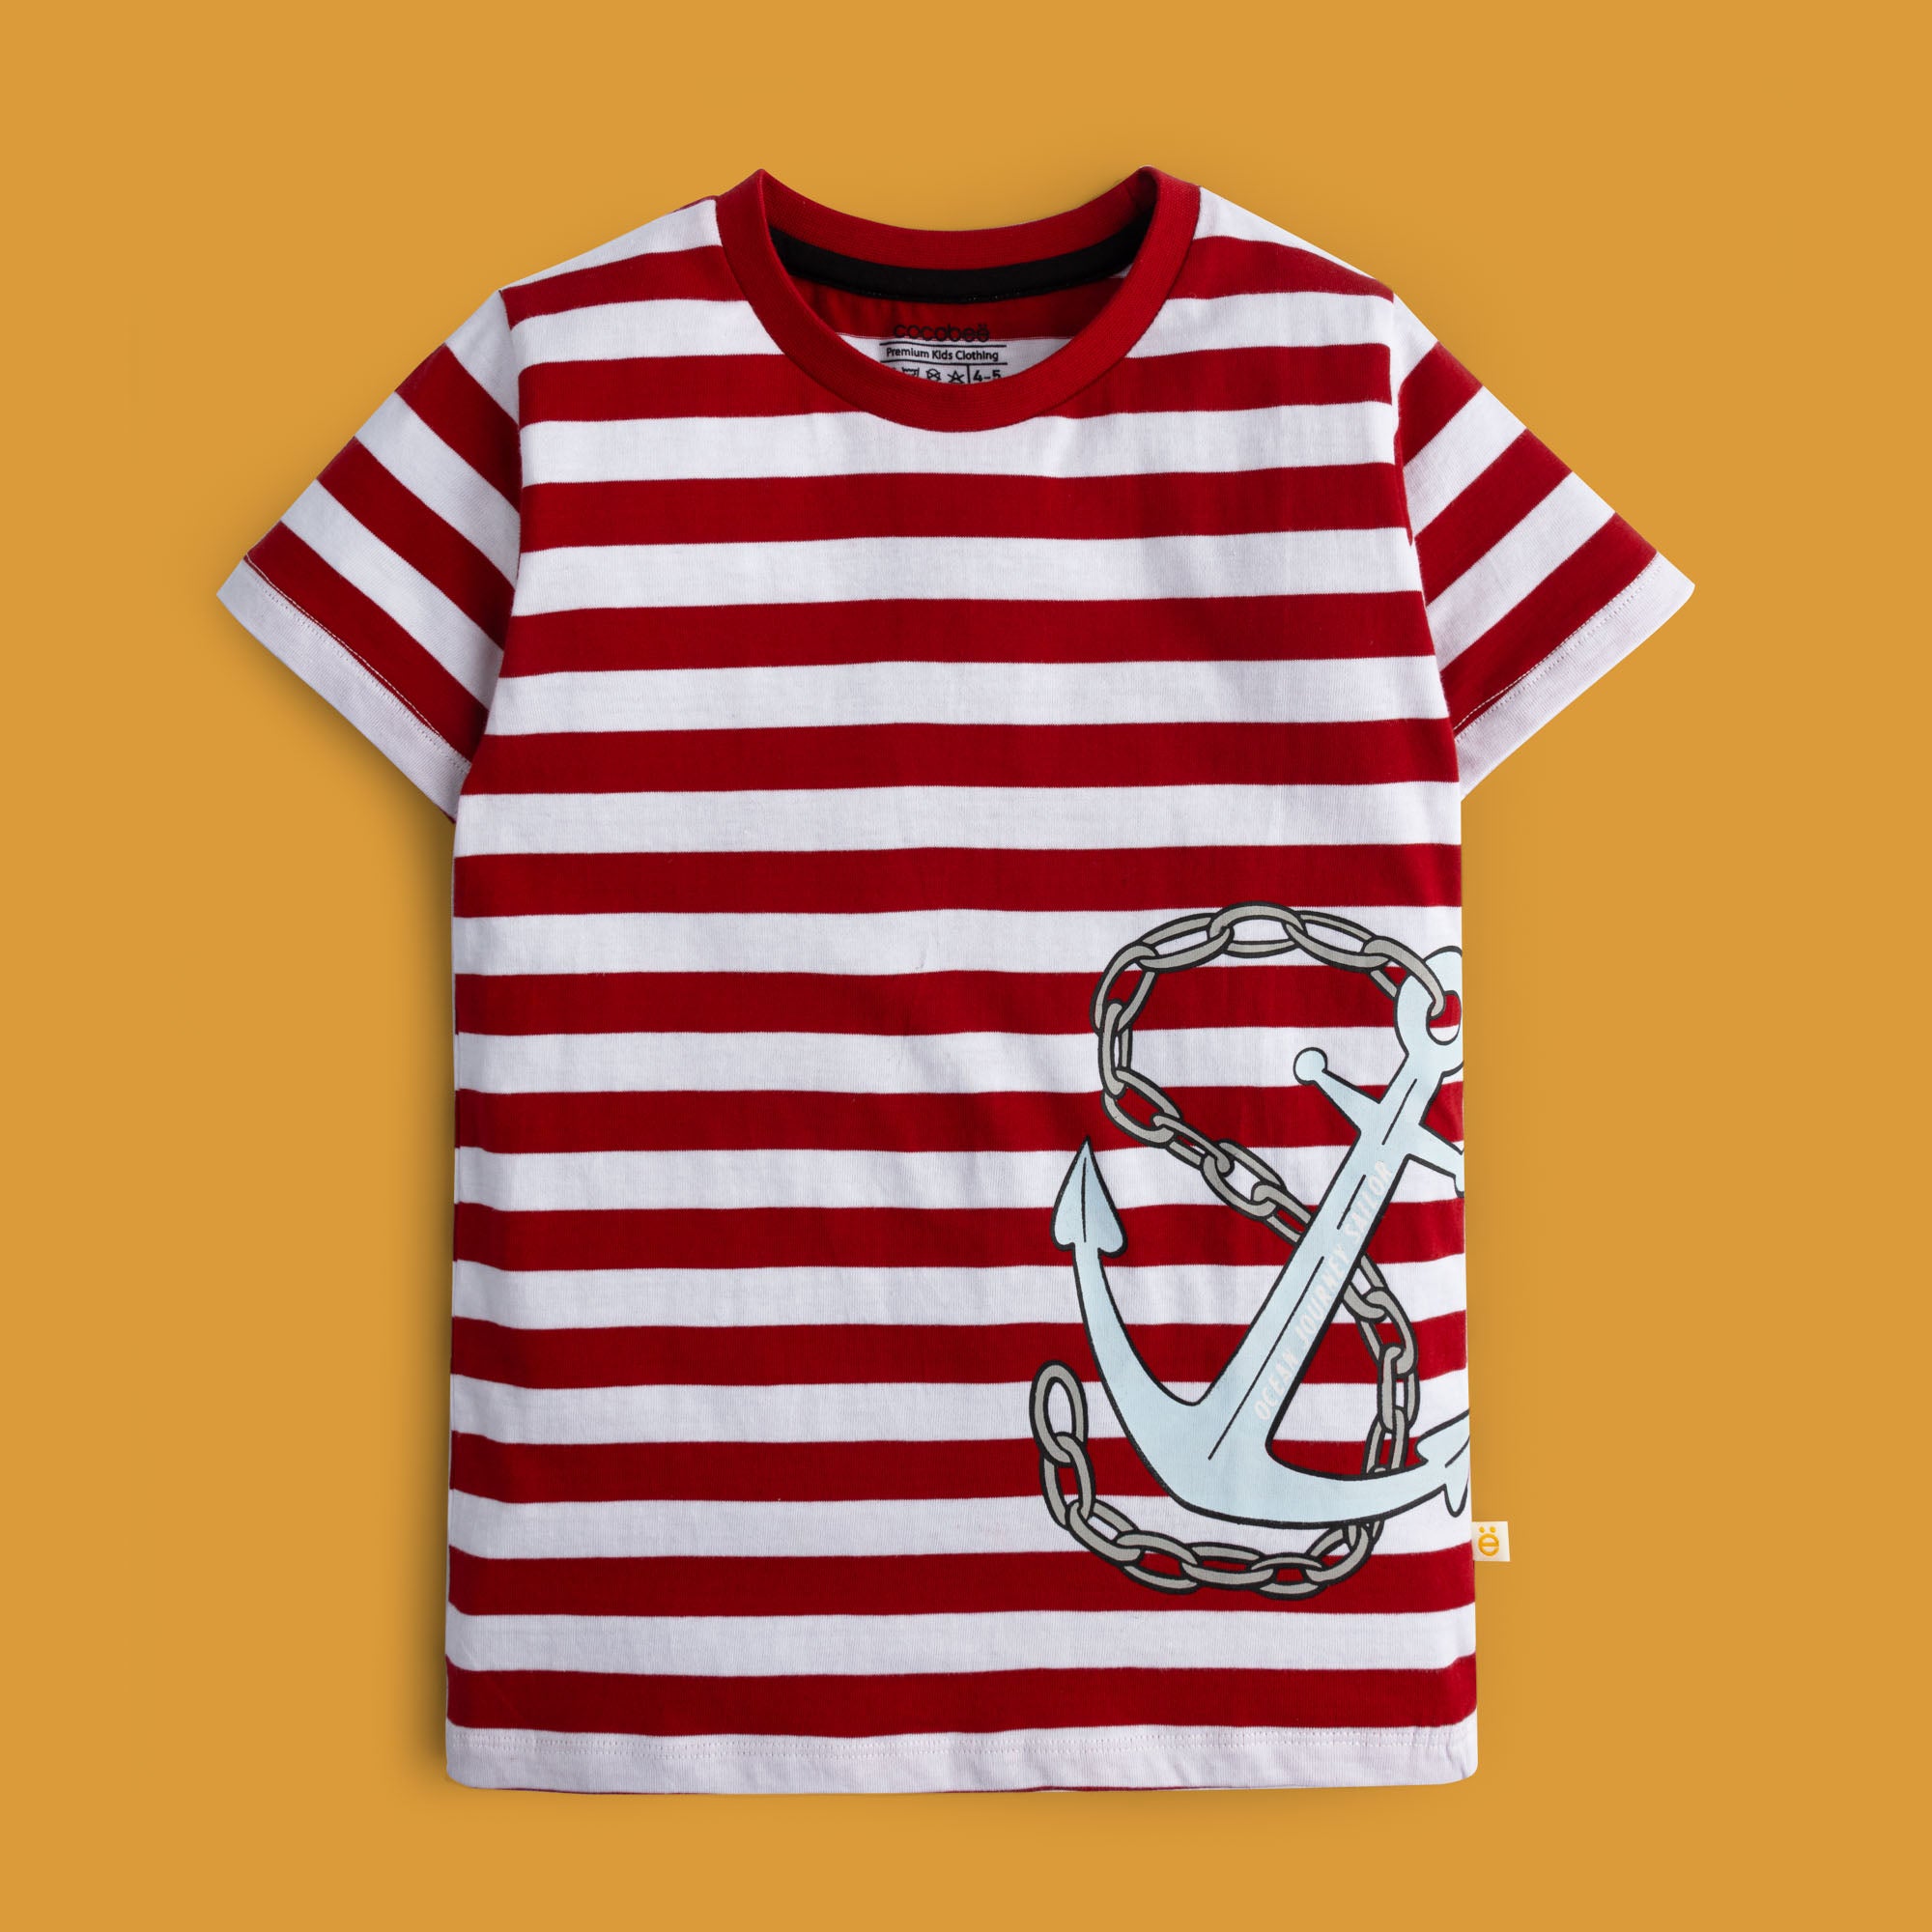 Sailor’s Stripes T-shirt